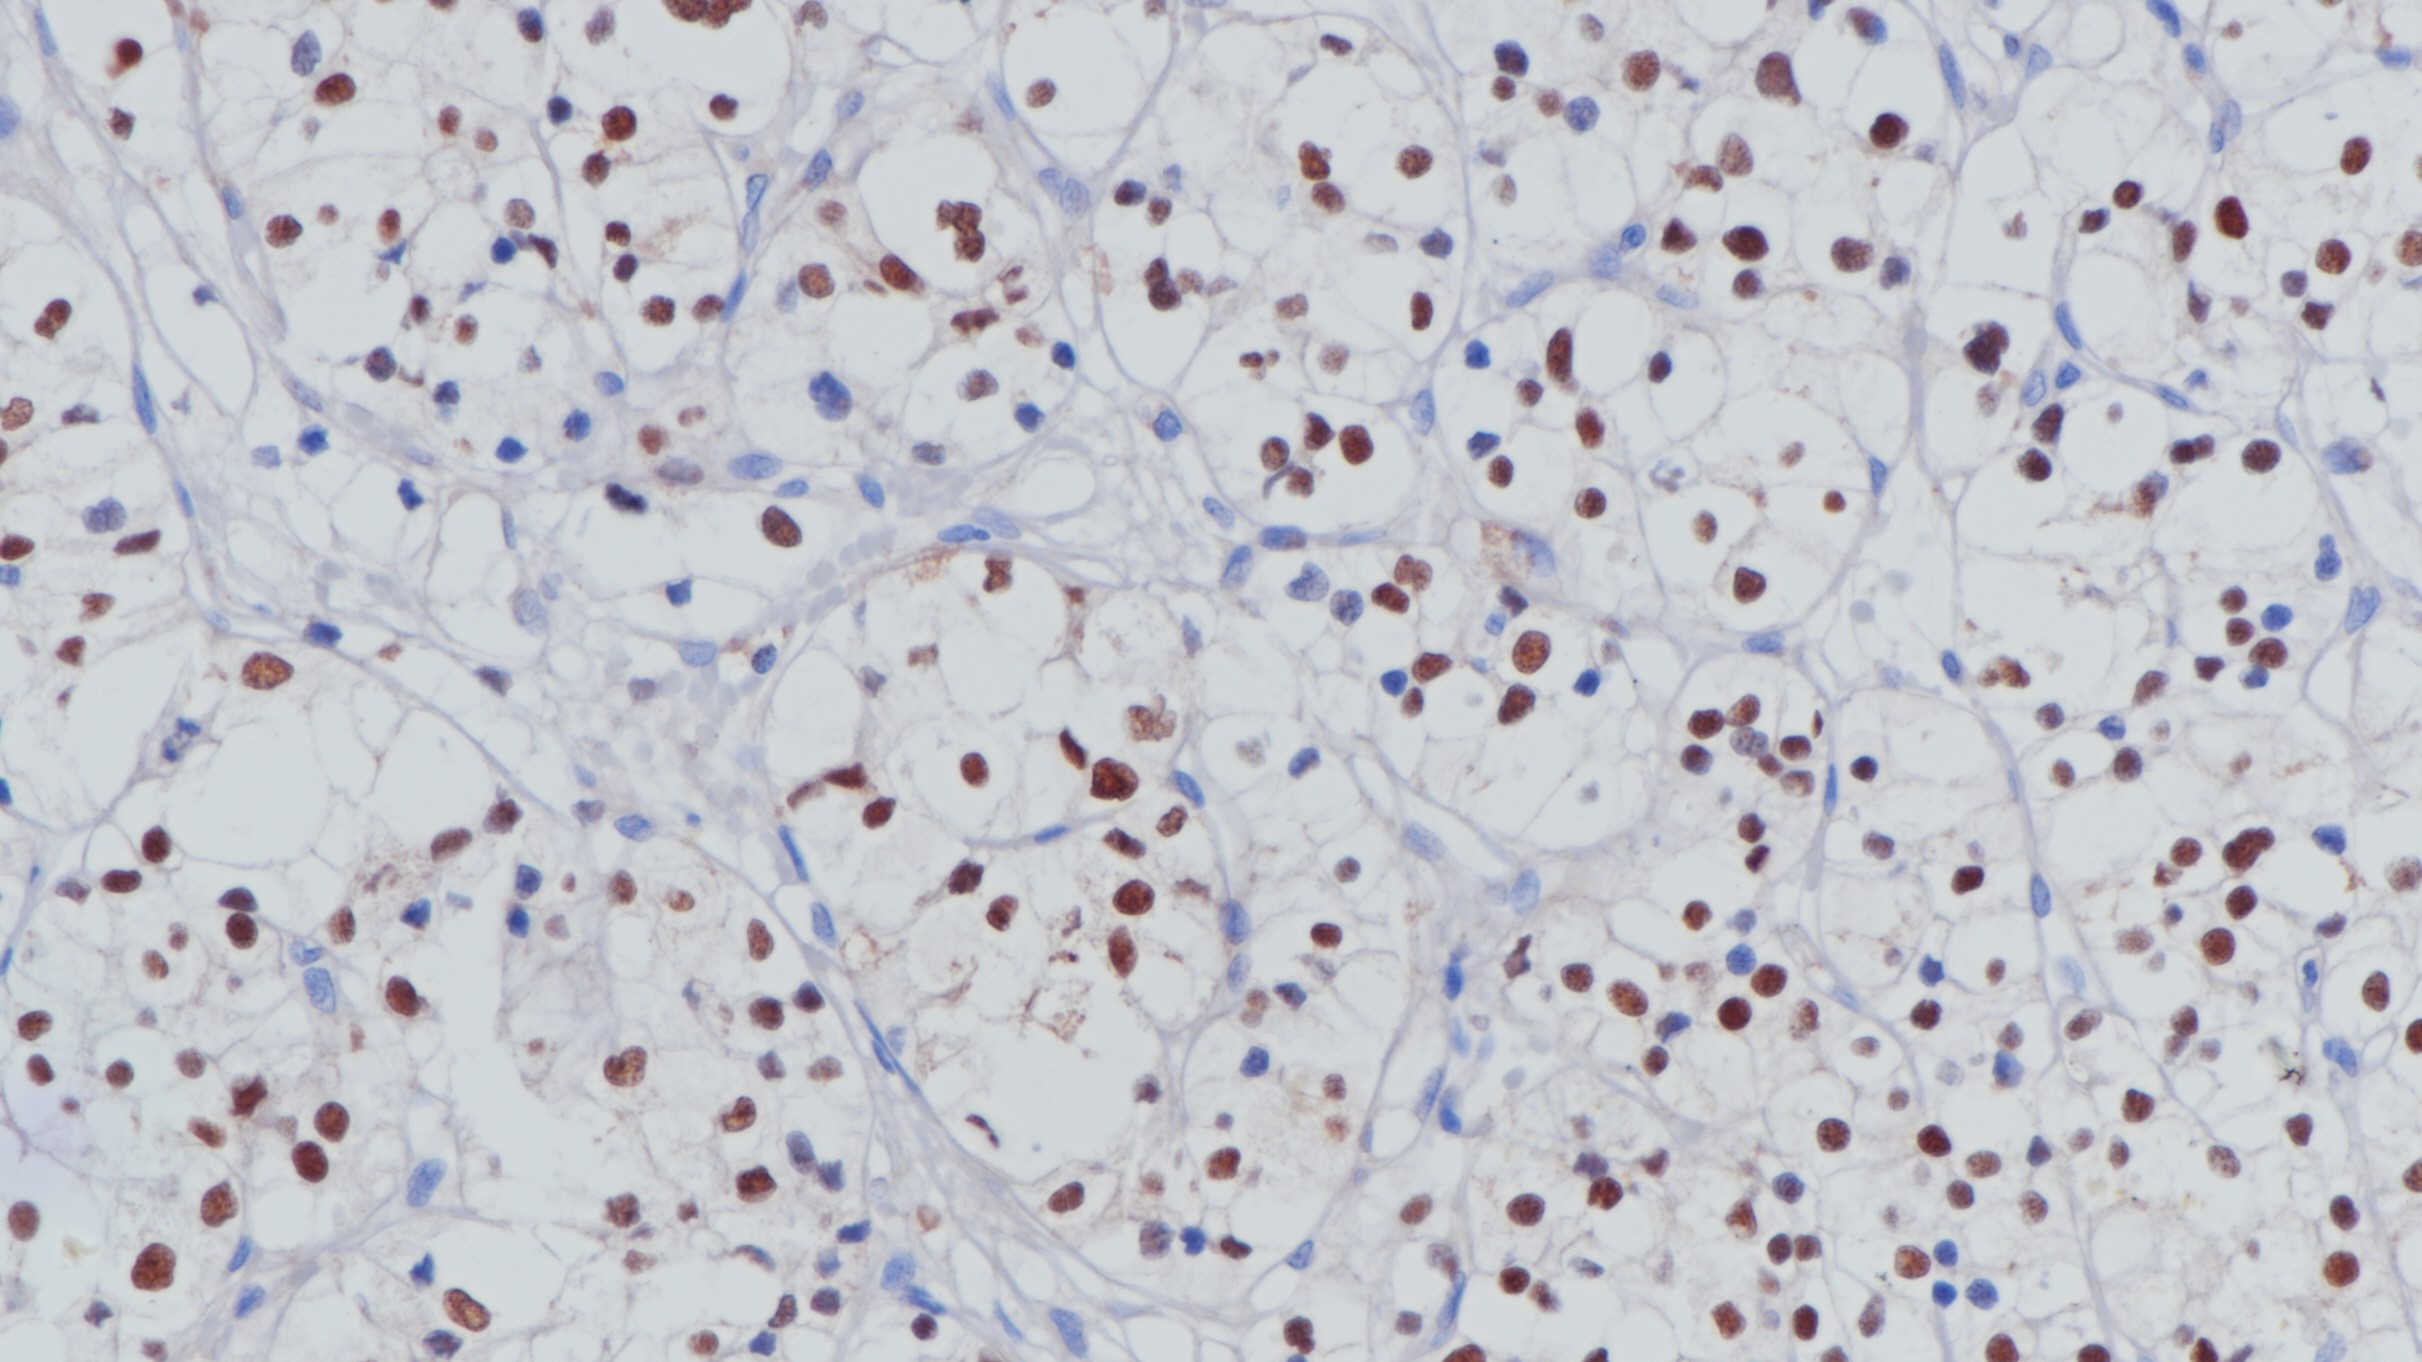 肾透明细胞癌Pax-8(BP6157)染色